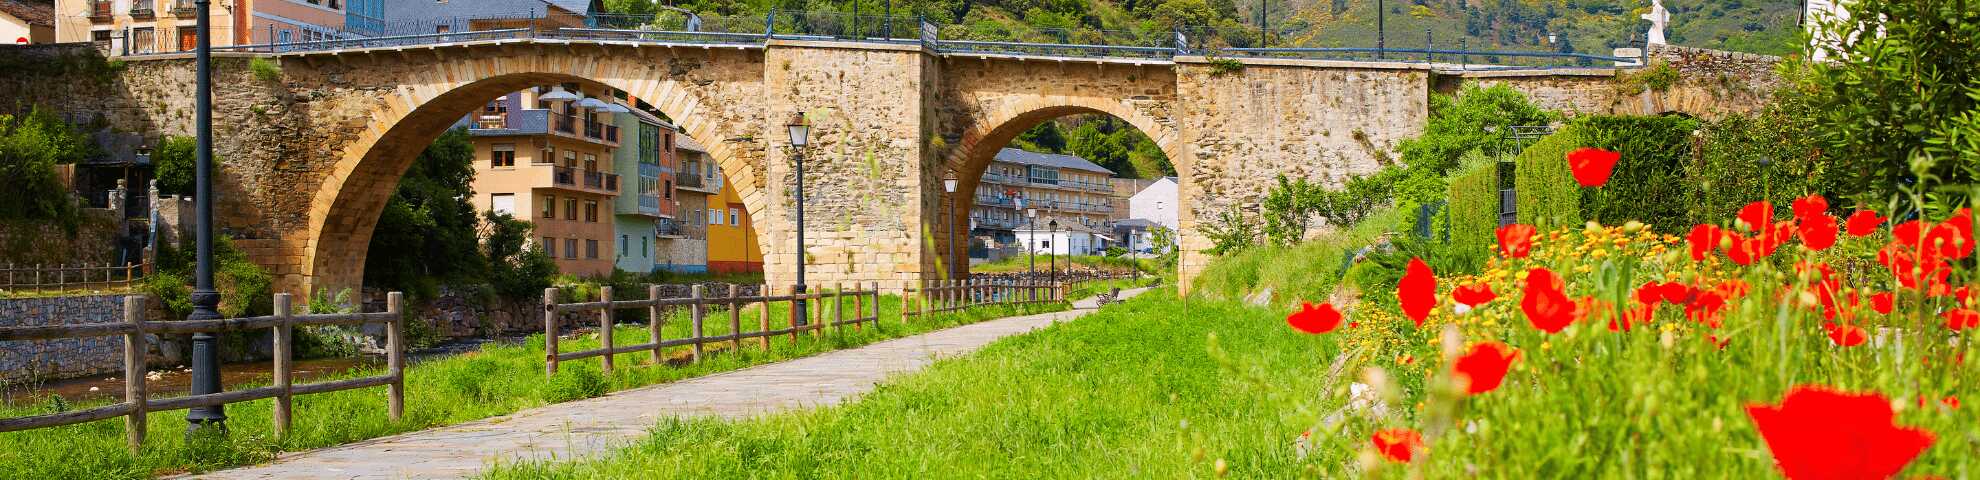 Puente medieval en Villafranca del Bierzo